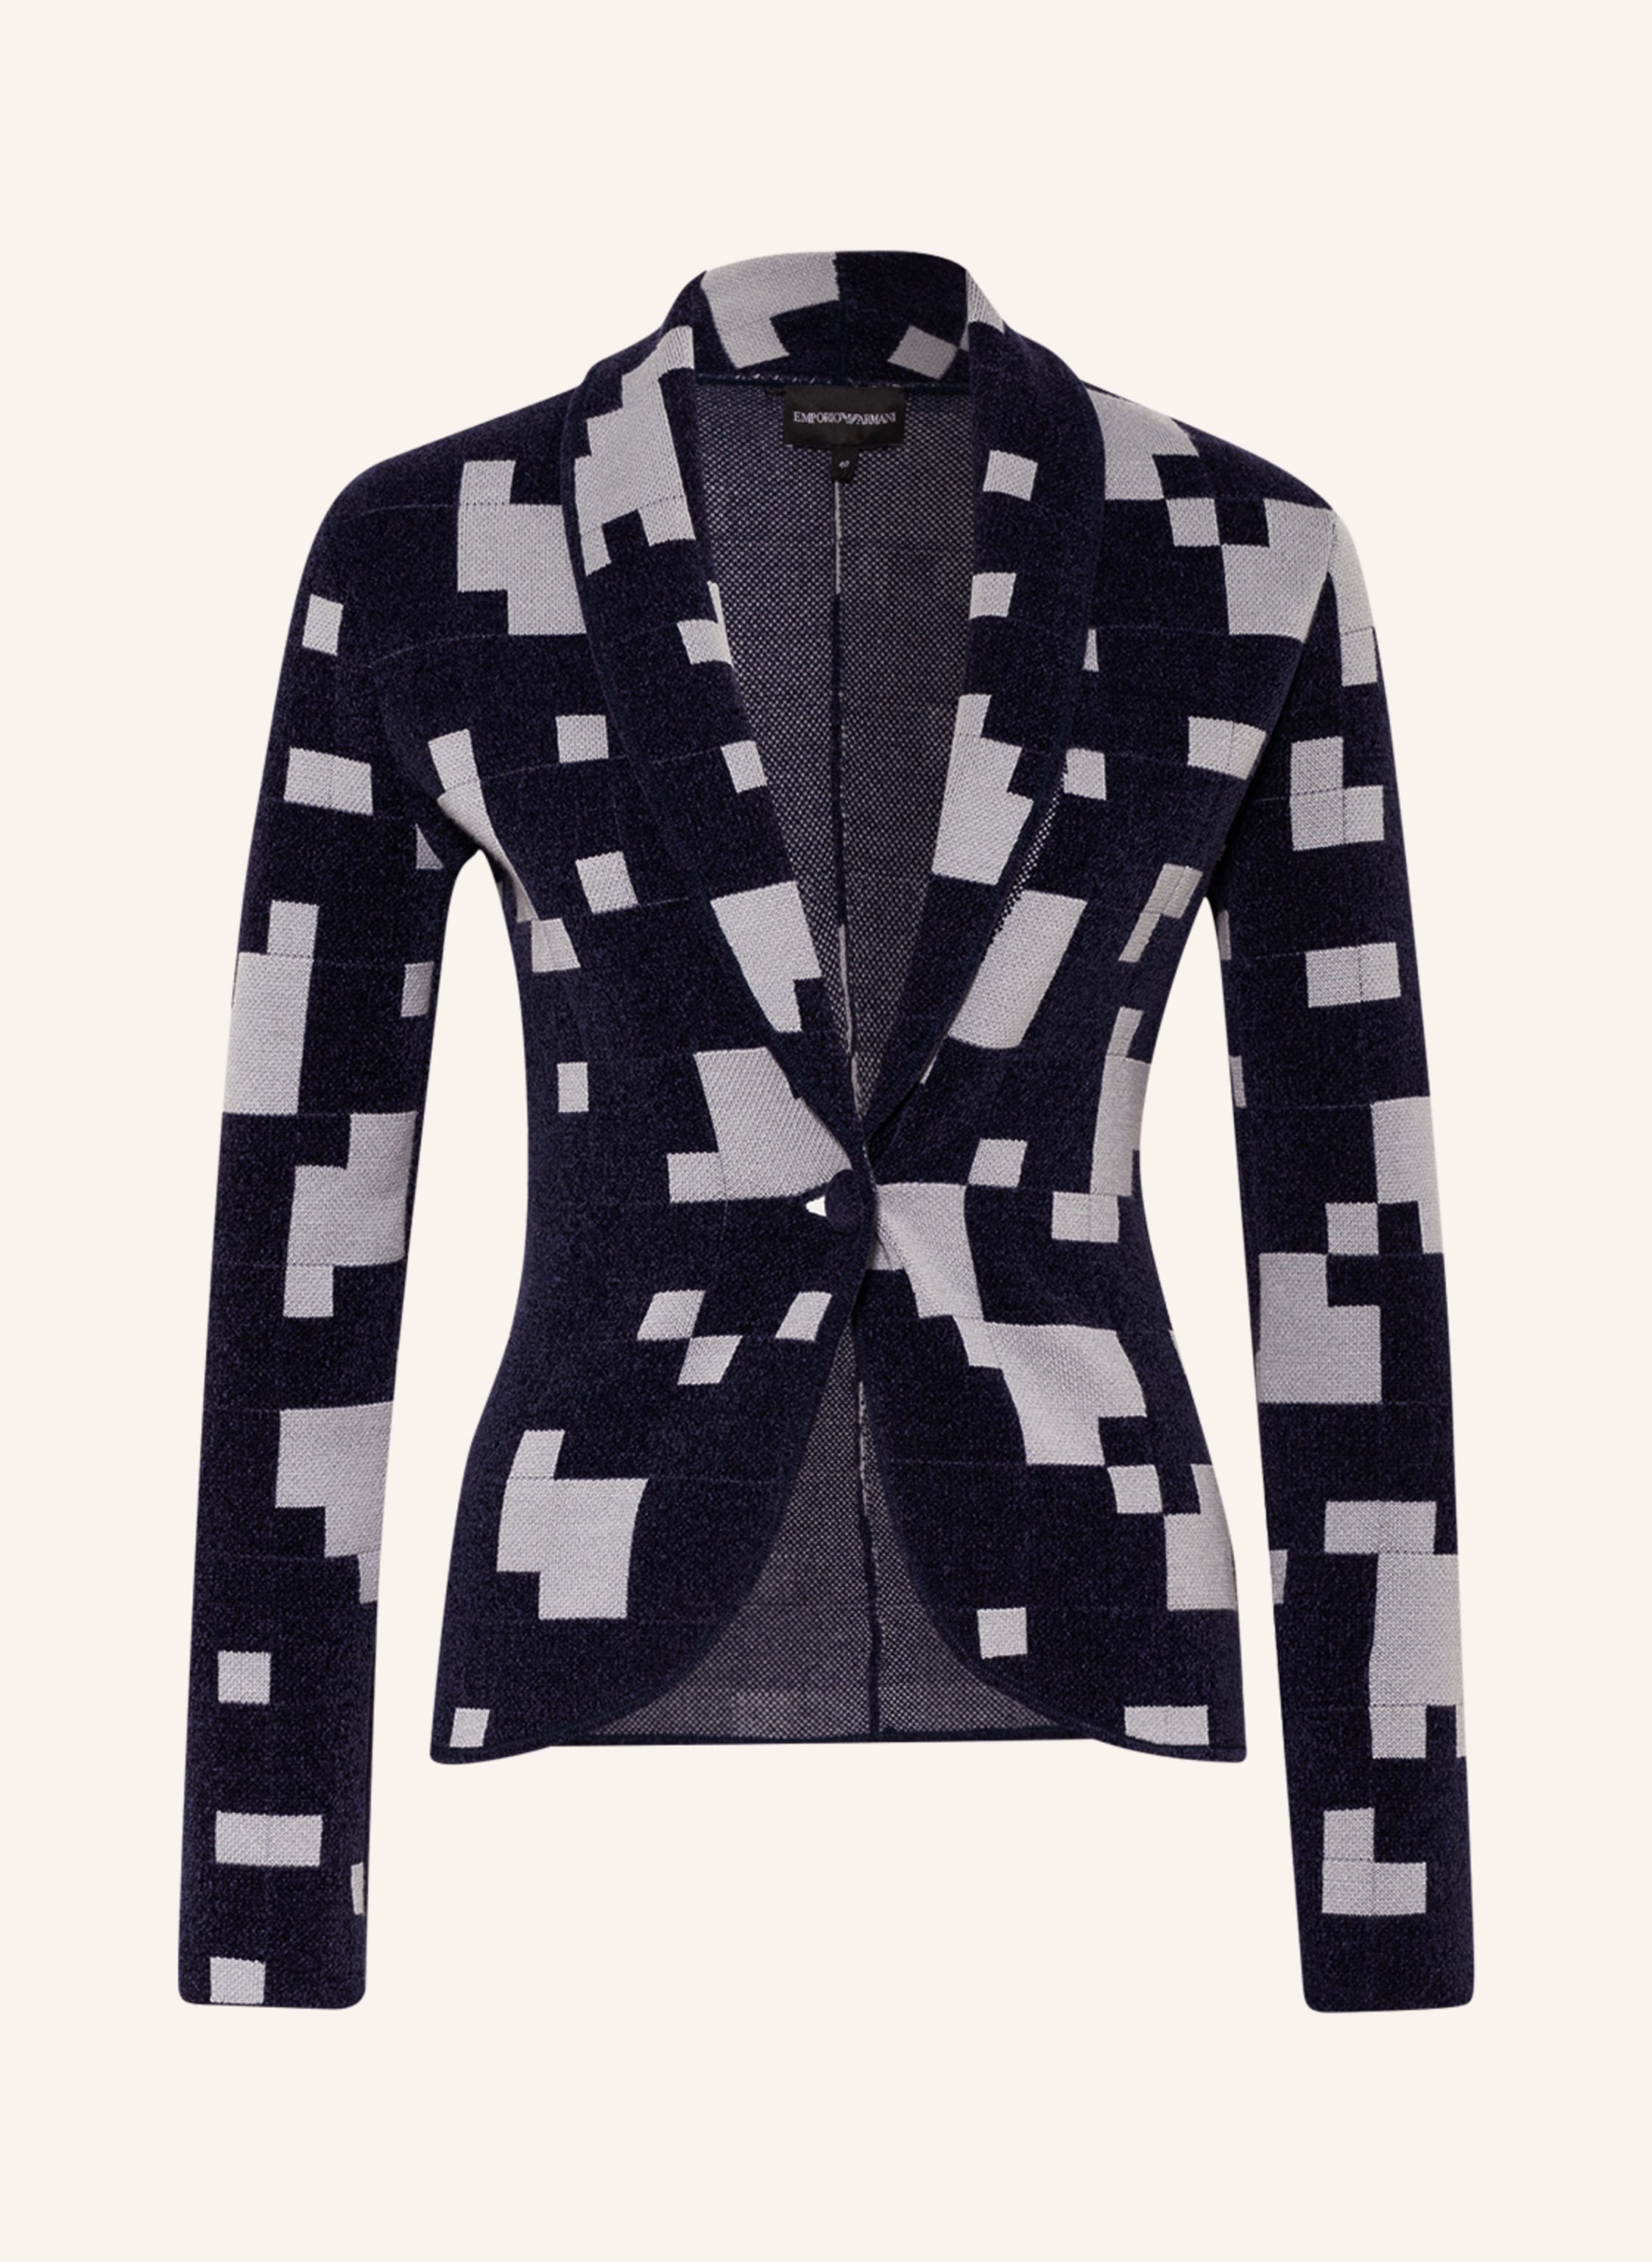 EMPORIO ARMANI Knit blazer in dark blue/ light gray | Breuninger